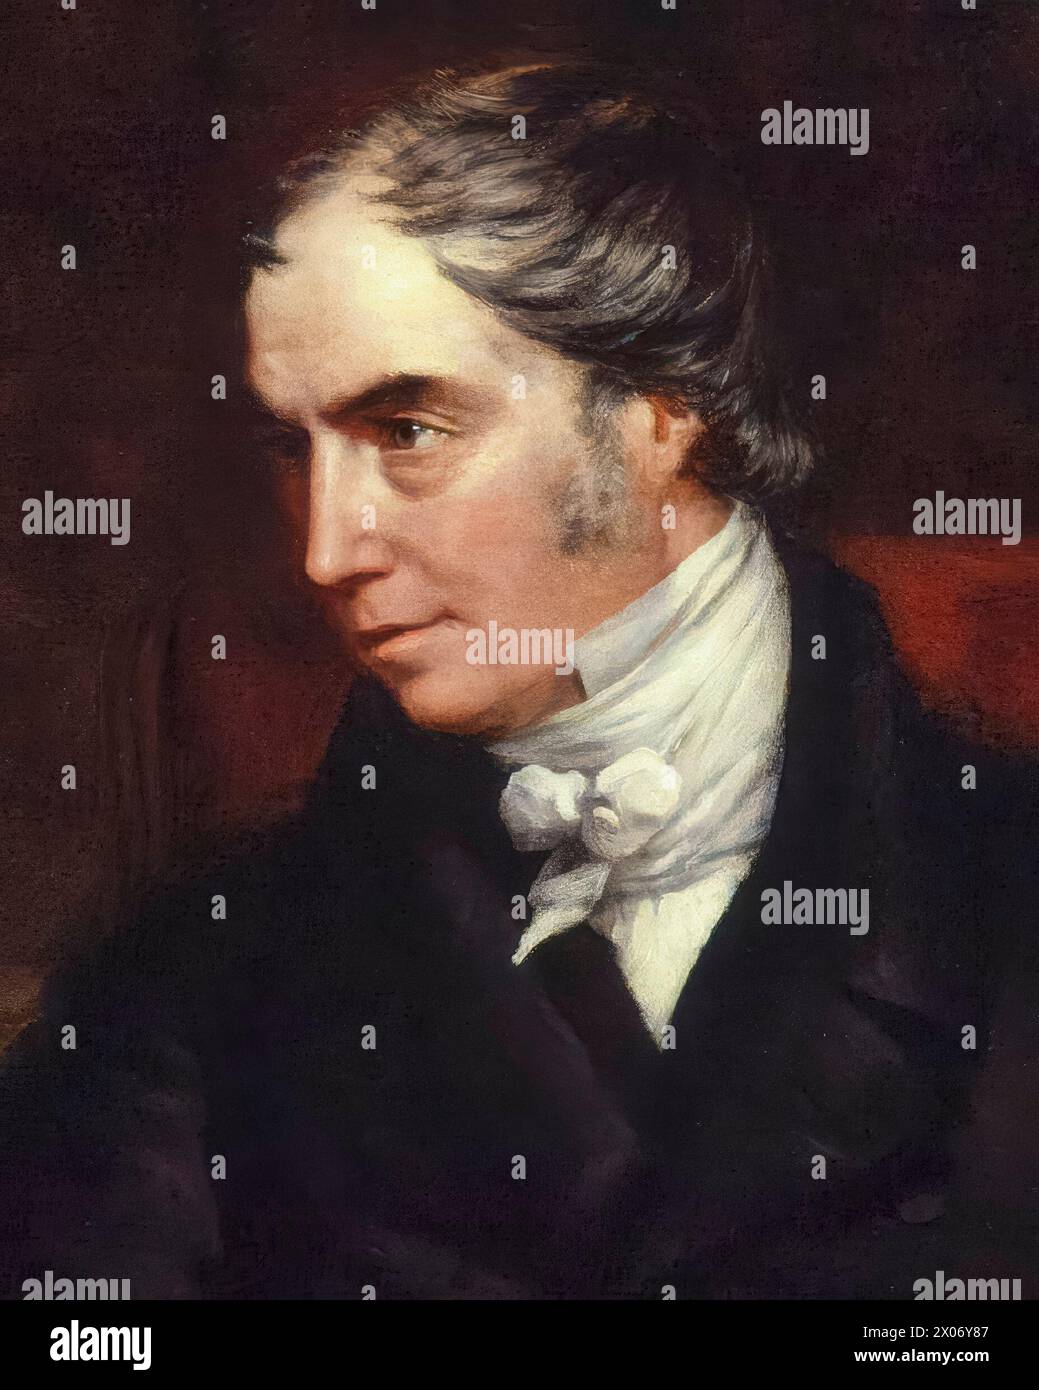 George Hamilton-Gordon, IV conte di Aberdeen (1784-1860), denominato "Lord Haddo", primo ministro del Regno Unito 1852-1855, ritratto a olio su tela di John Partridge, circa 1847 Foto Stock